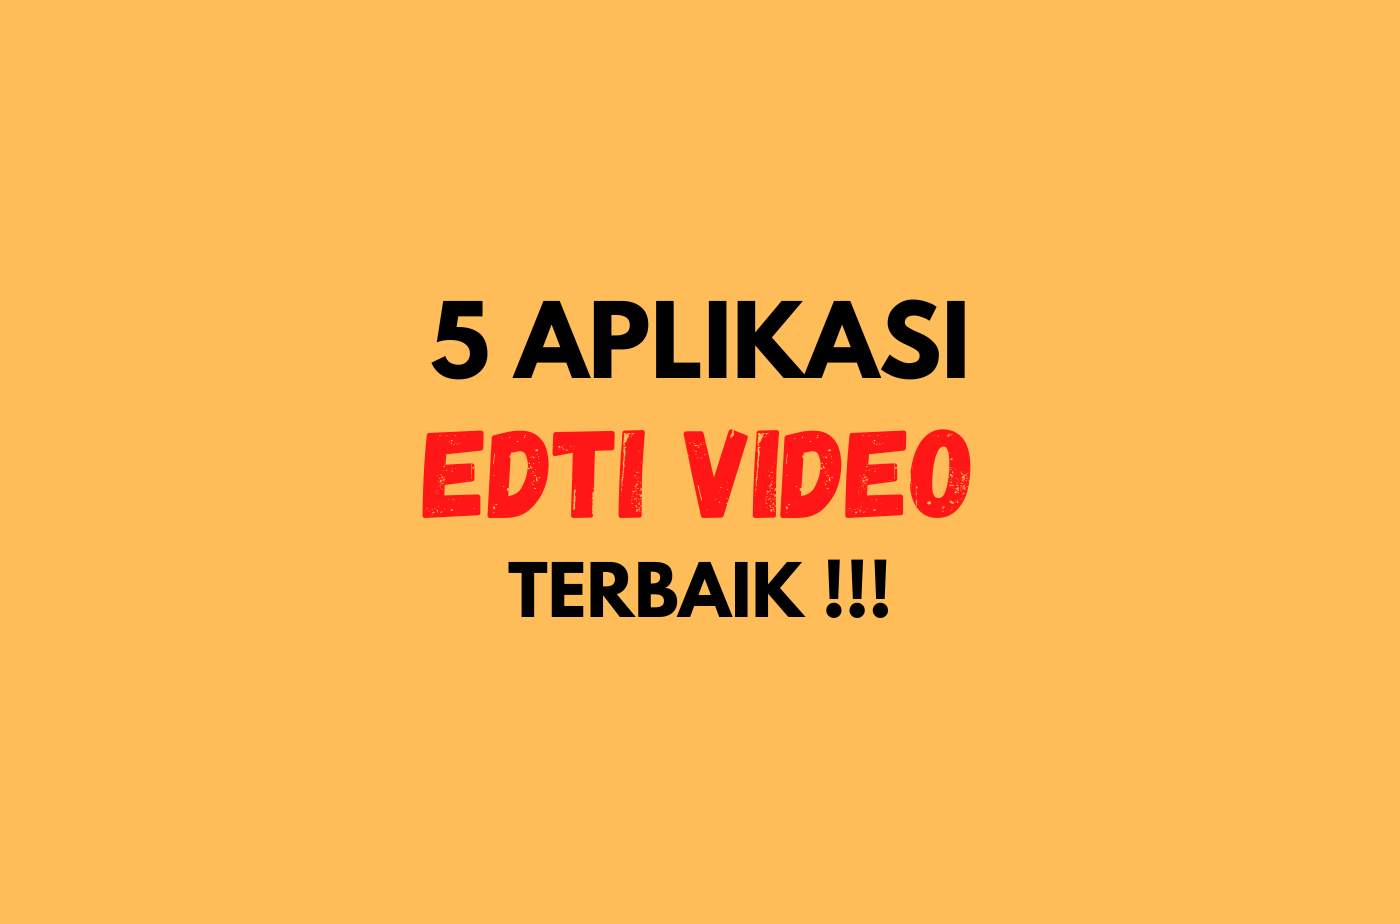 5 Aplikasi Edit Video Terbaik - Tanpa Watermark